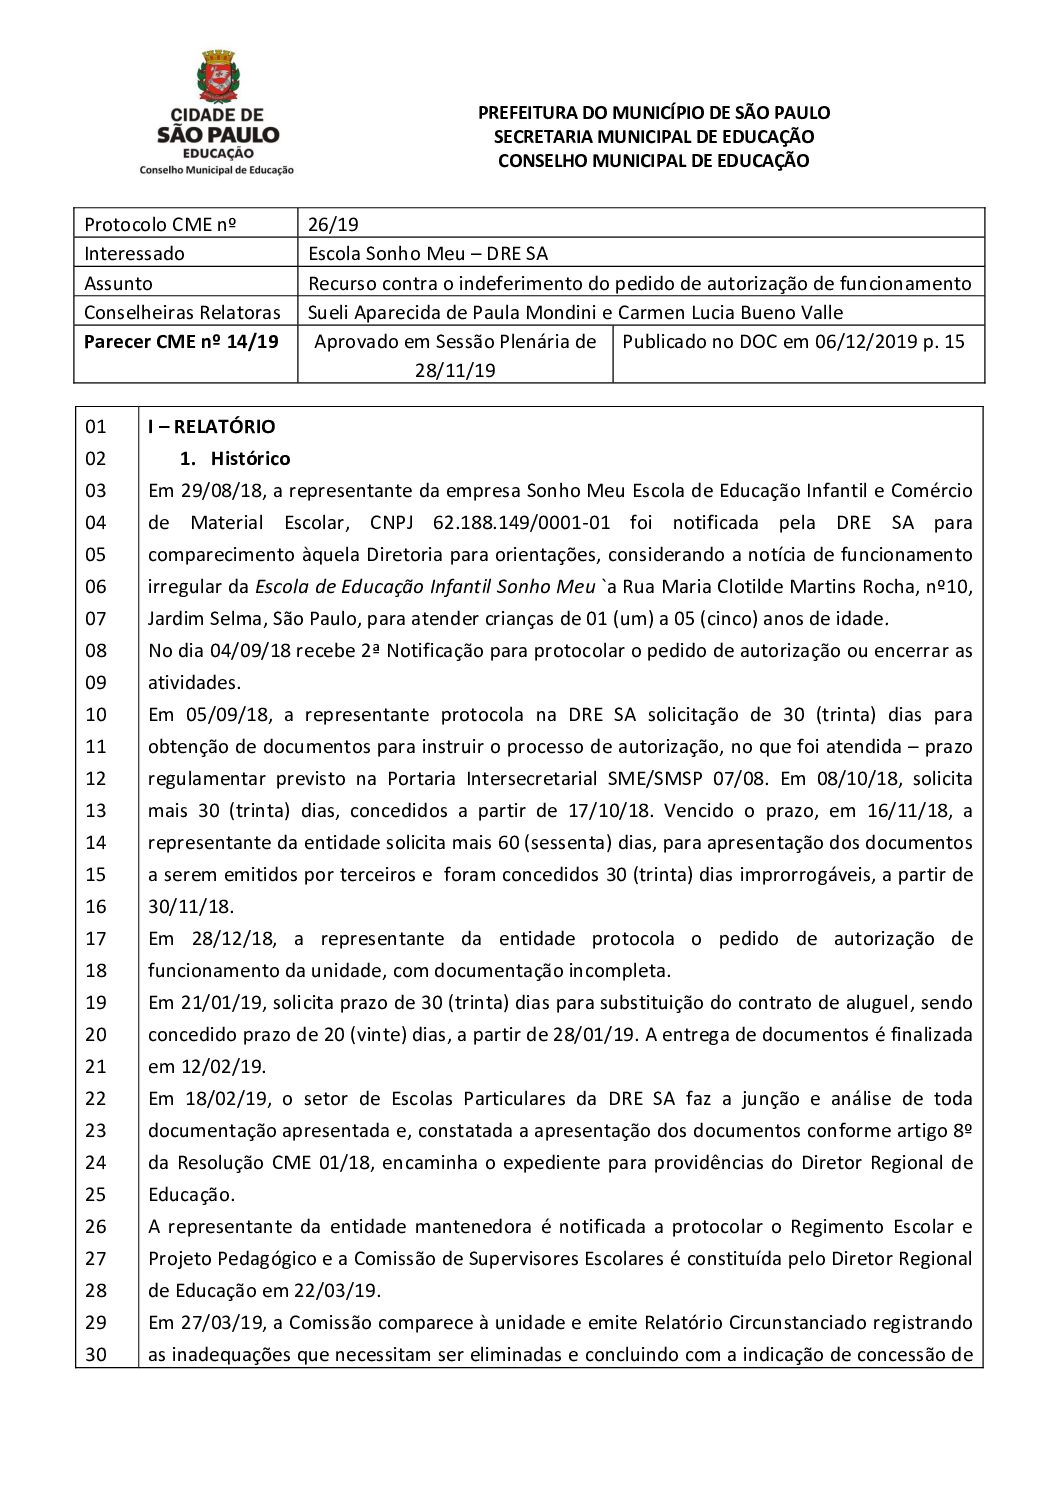 Parecer CME nº 14/2019 - Escola Sonho Meu (DRE Santo Amaro) - Recurso contra o indeferimento do pedido de autorização de funcionamento 